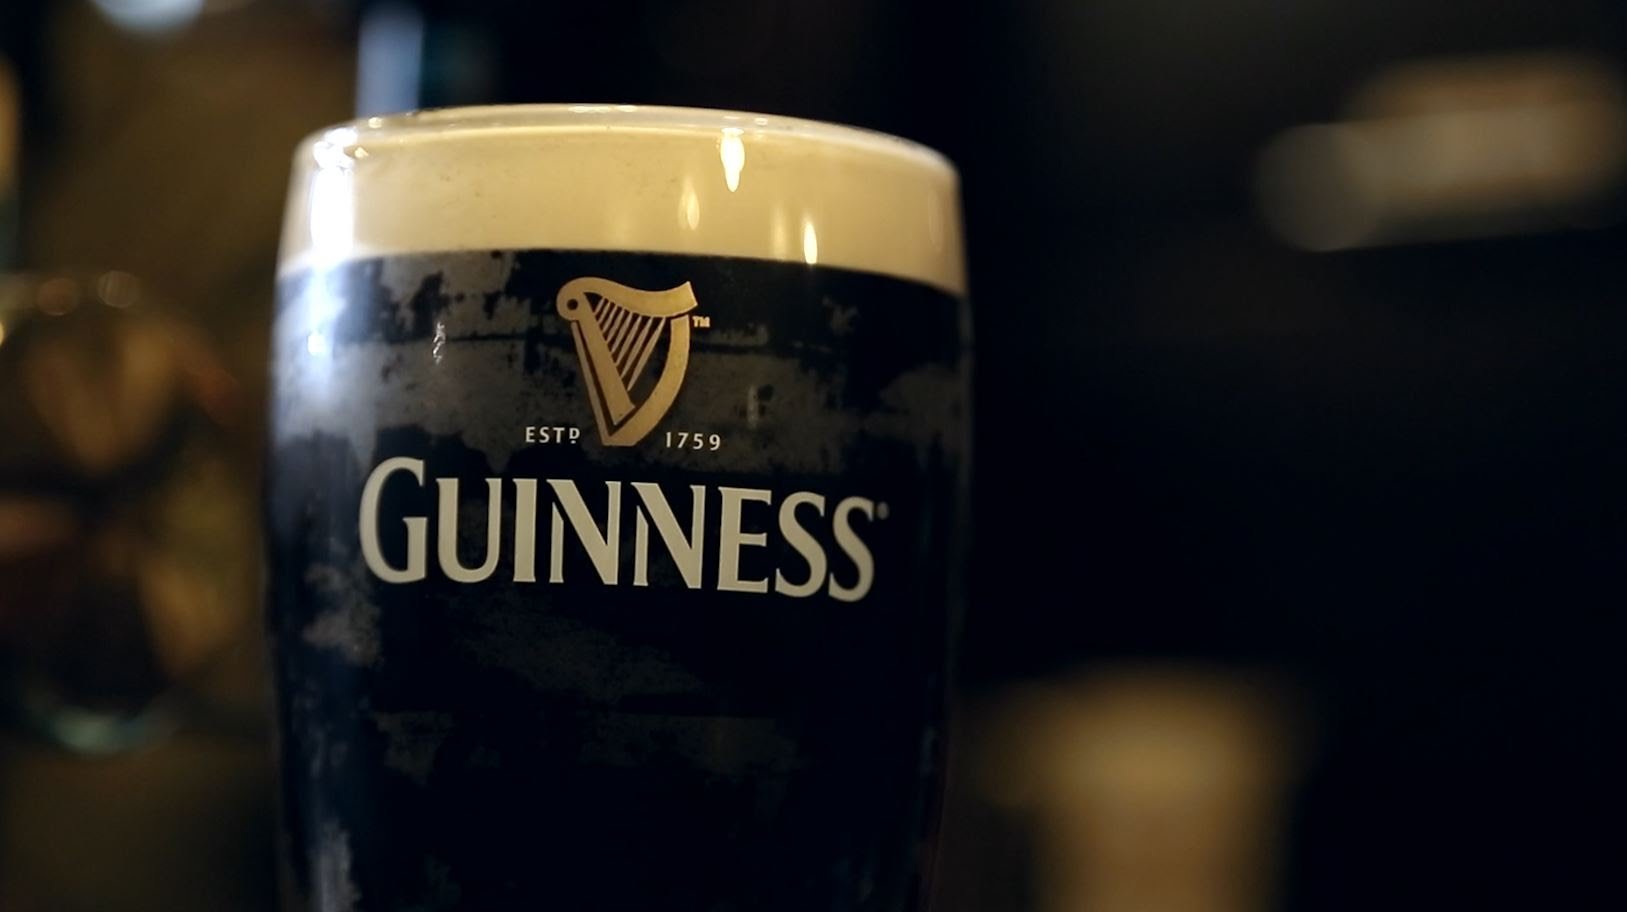 Η Guinness μας καλεί να γιορτάσουμε μαζί την ημέρα του Αγίου Πατρικίου στις 17 Μαρτίου